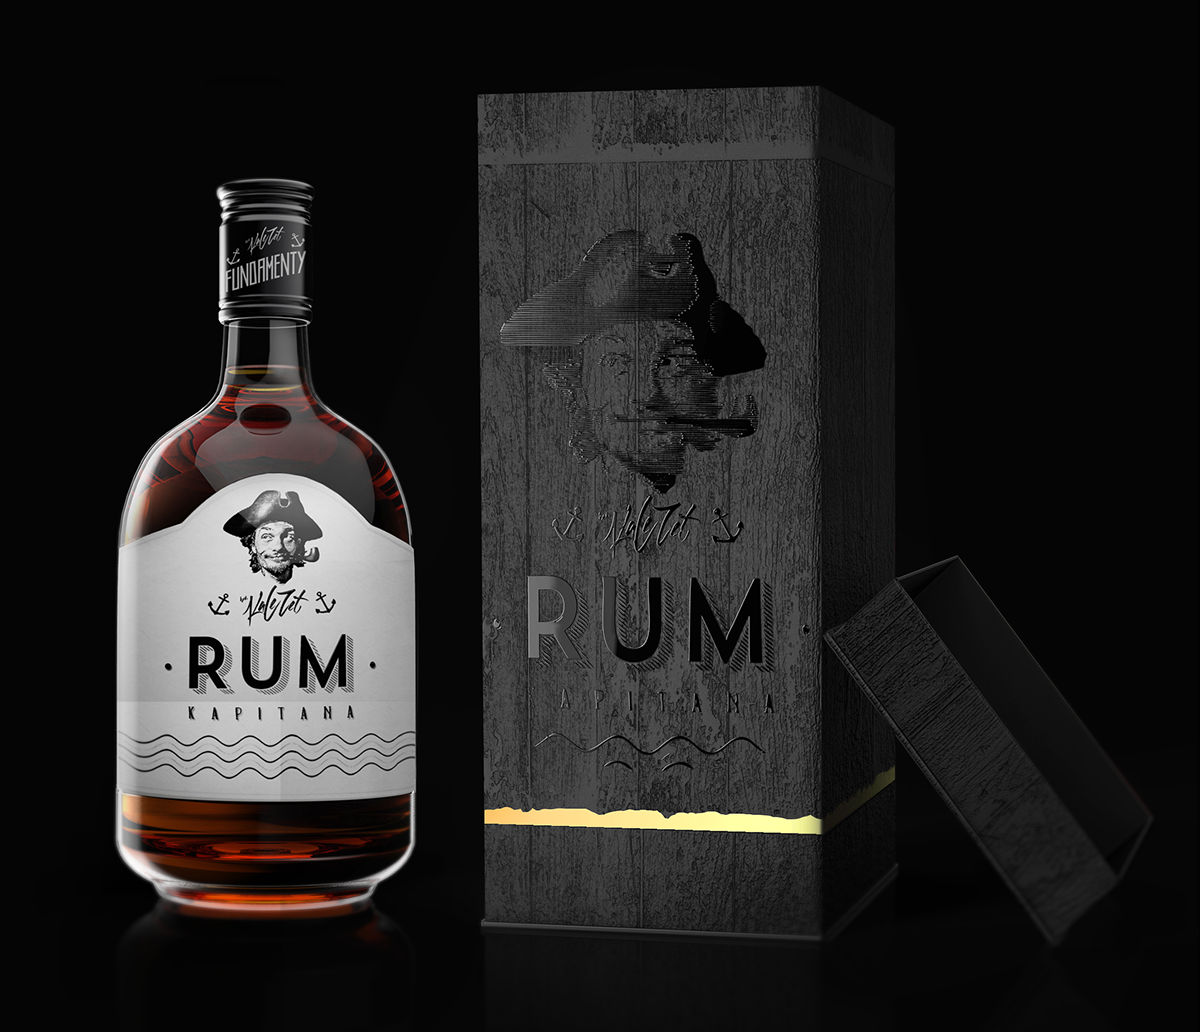 Rum alcohol bottle pirates captain drink beverage Label etiquette matcloud